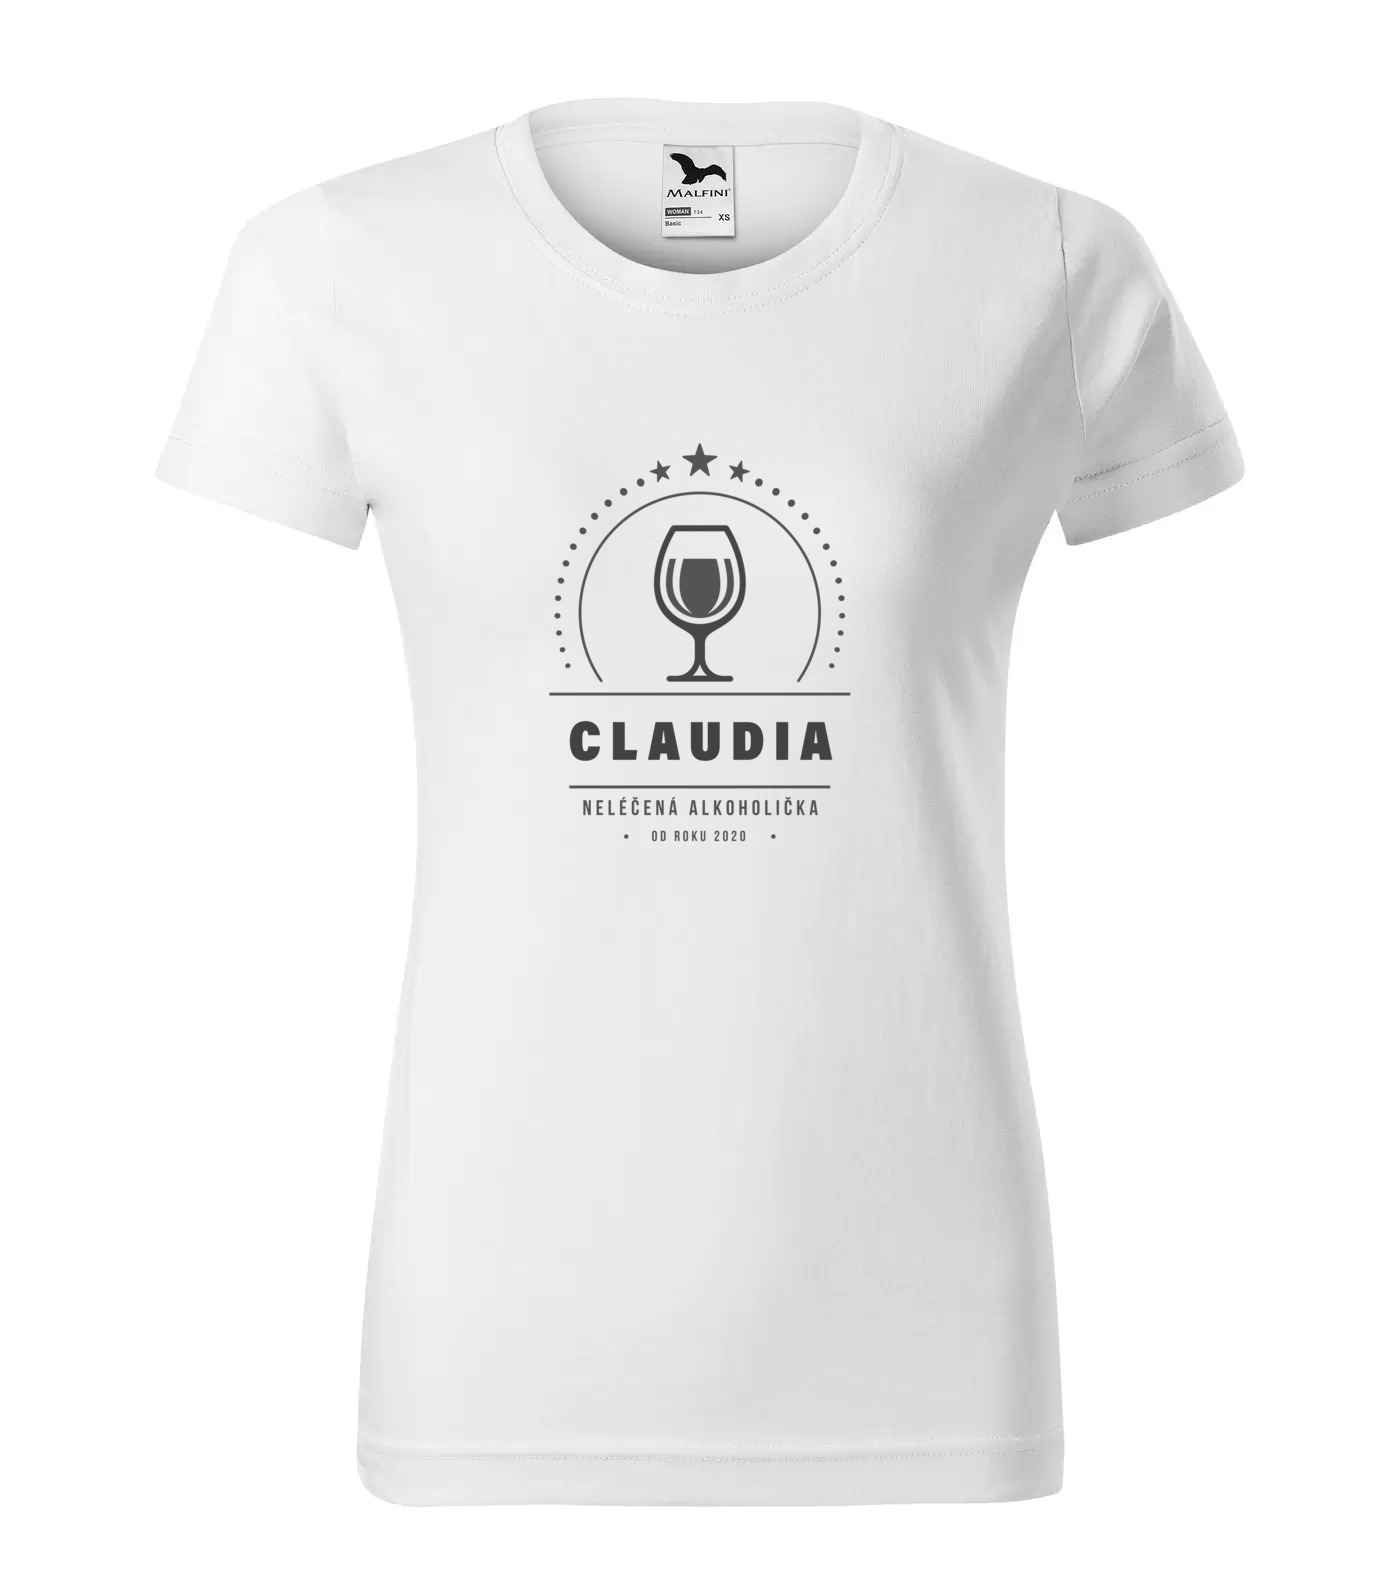 Tričko Alkoholička Claudia